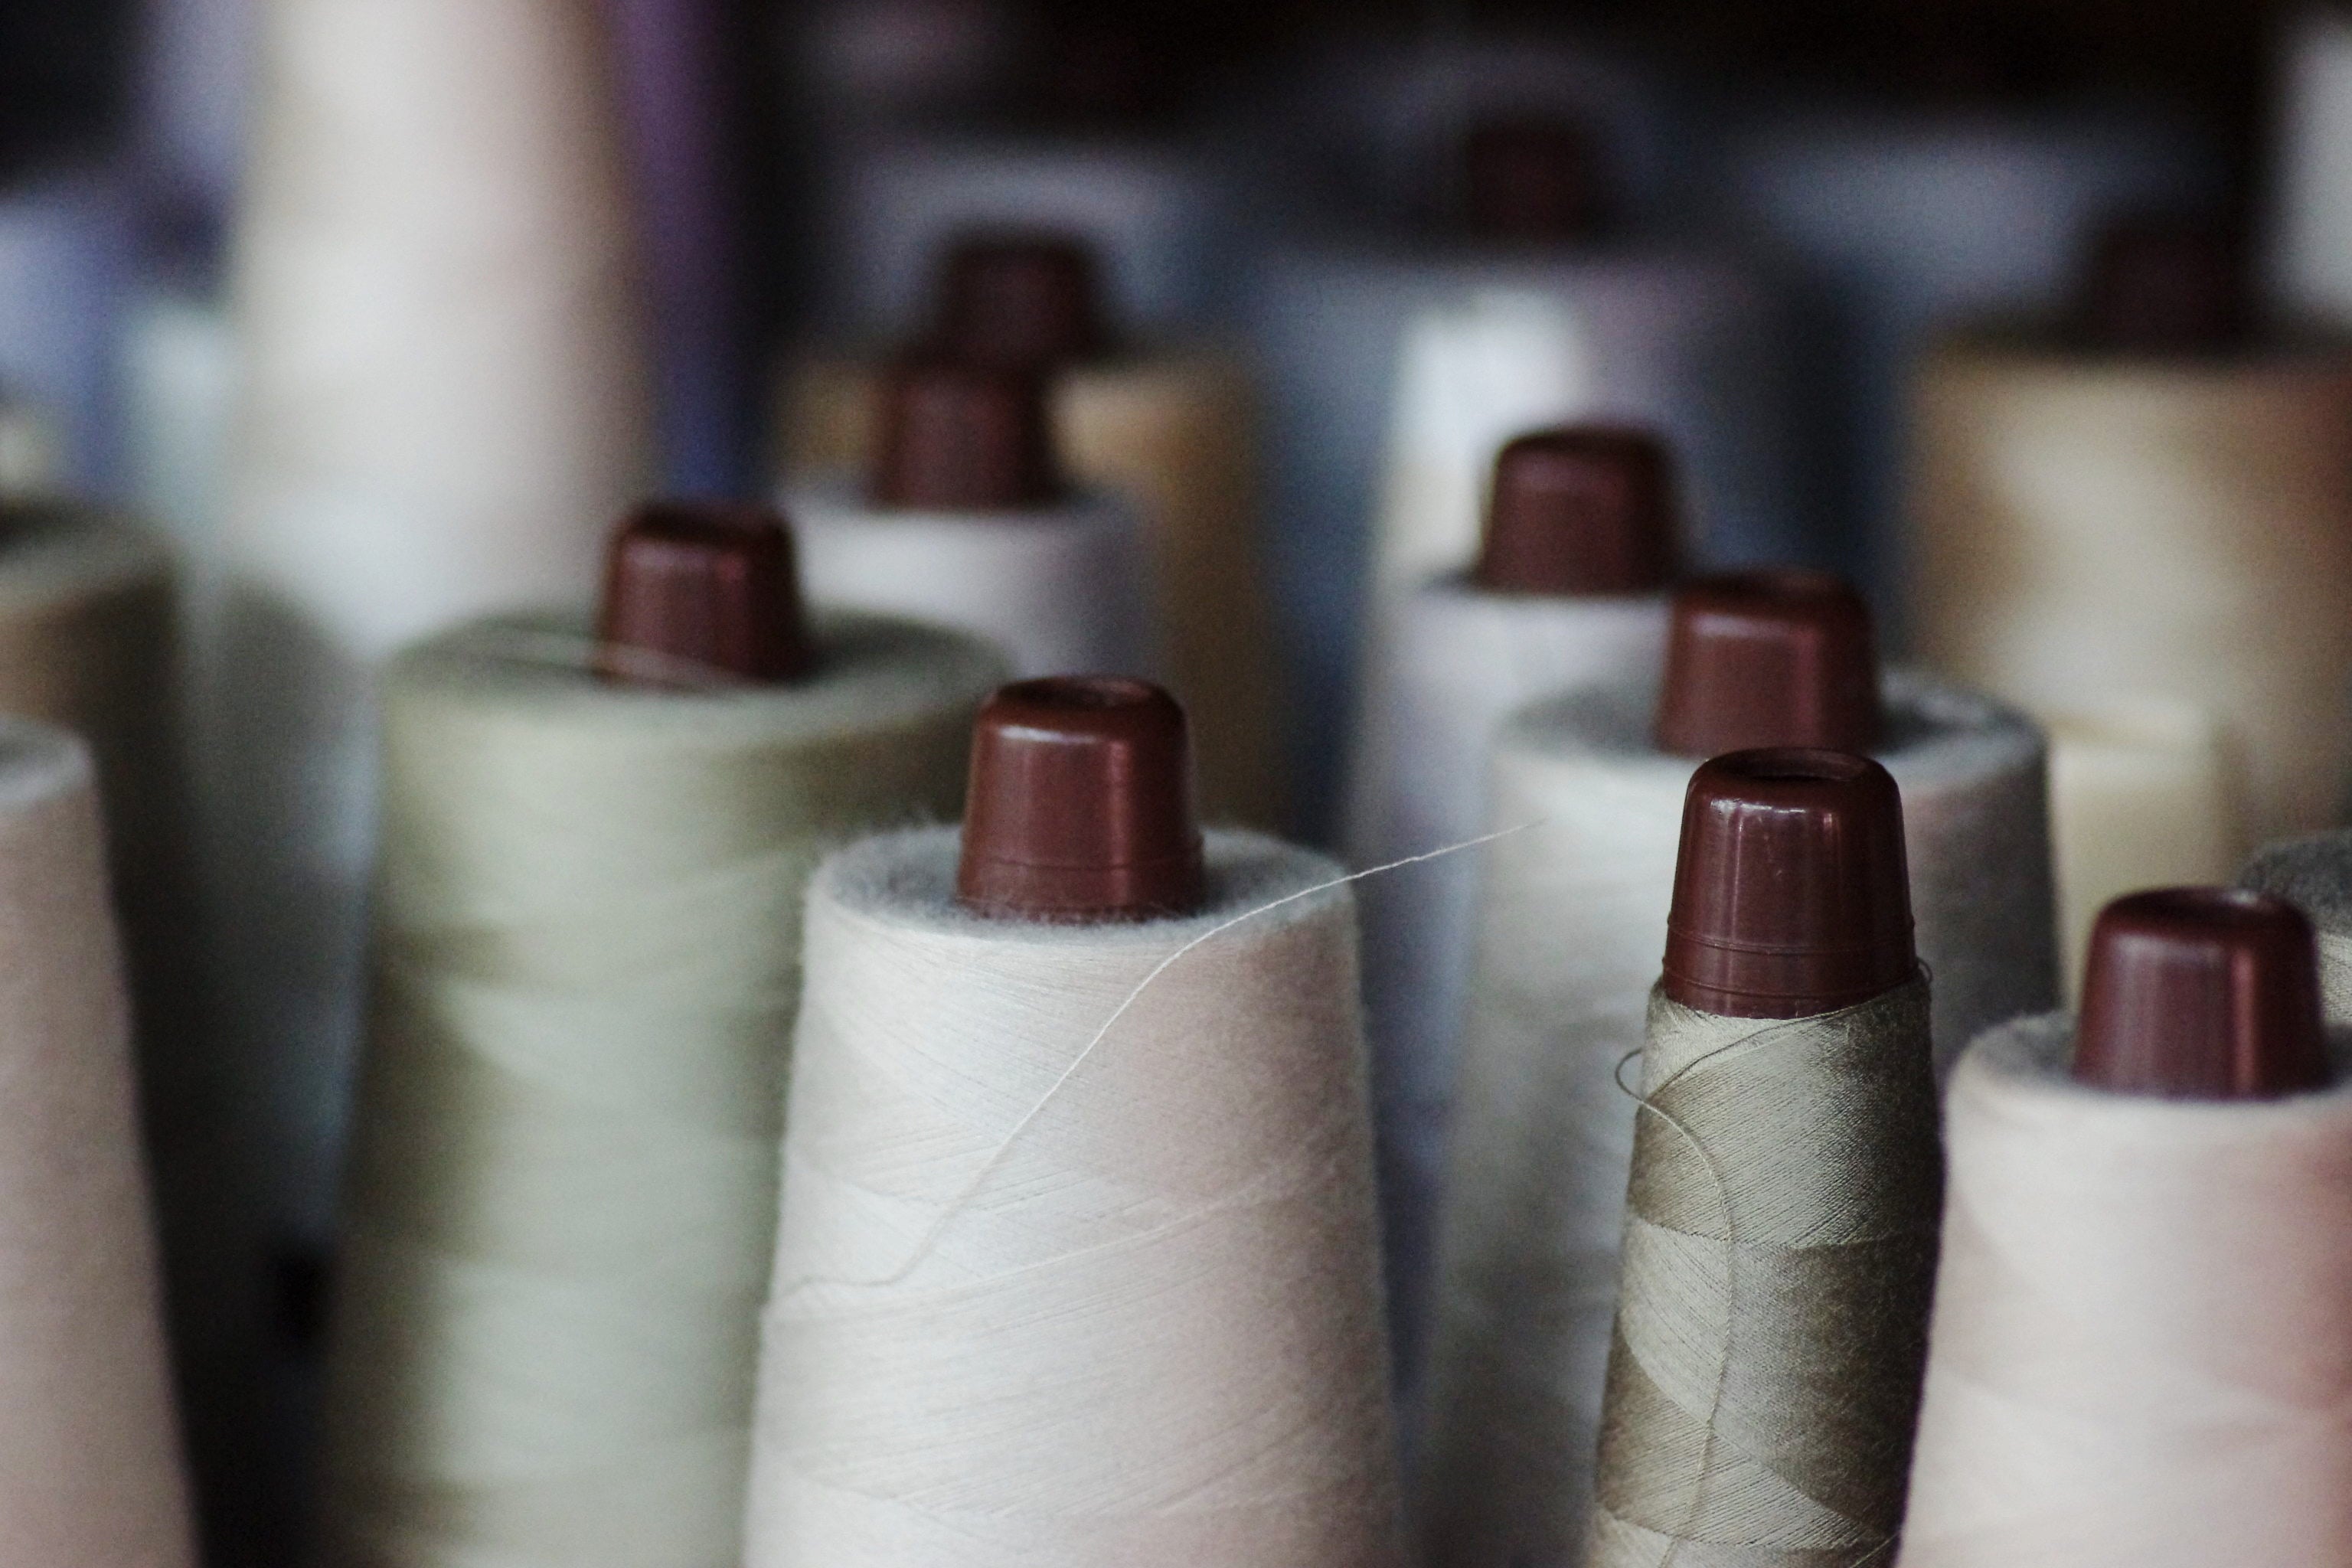 わたからつむぐの製品は、生産地、生産者がわかるものづくりを心がけています。弊社のオリジナル性として、自社畑で和綿を栽培から育て、岐阜県にある自社の縫製工場にて裁断から縫製、検品まですべて一貫して行っていることです。わたから わたからつむぐ マインド松井 日本の綿 和綿 綿 コットン 100% 自給率 オーガニックコットン 無農薬 わめん 日本製  国内 国産 国内栽培 栽培 和綿とは 種類 コットンの種類 綿の種類 岐阜 熊本 技術者 継承 ものづくり 手作業 手作り 安心 安全 安心安全な 自然 ナチュラル 天然繊維 ガラ紡 特徴 自社工場 縫製工場 検針機 アパレル 小物 製作 アパレル アパレル縫製 ソーイングスタッフ 国内製造 販売 OEM サンプル 小ロット 手作業 草木染め オリジナル オリジナル商品 コットン製品 コットン商品 綿製品 オーガニックコットン商品 メリット 綿 わた コットン オーガニックコットン 綿１００％　コットン１００％　オーガニックコットン１００％